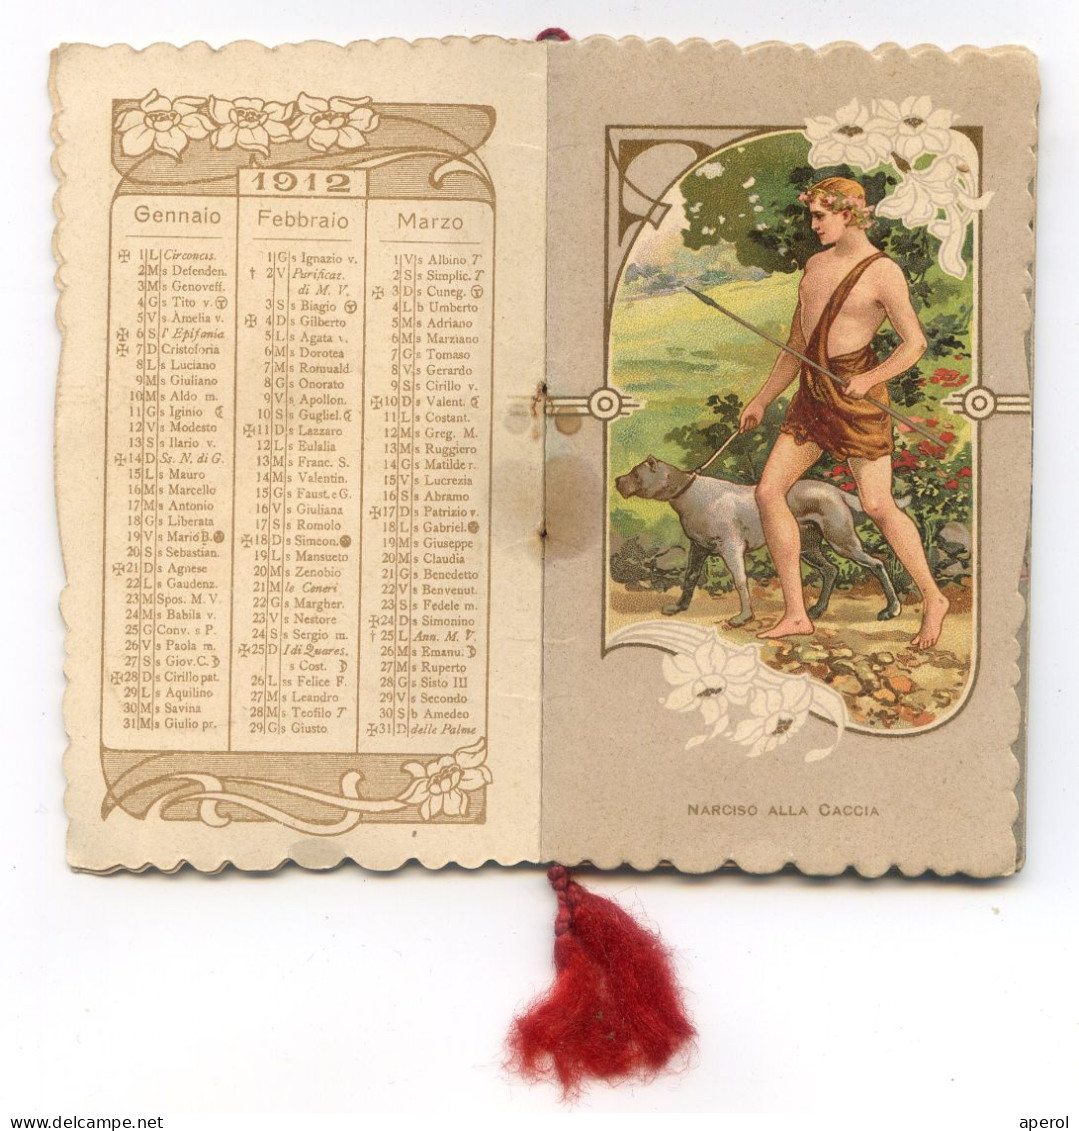 1912 CALENDARIETTO Liberty - La LEGGENDA Di NARCISO - Almanacco Pubblicitario - Formato Piccolo : 1901-20